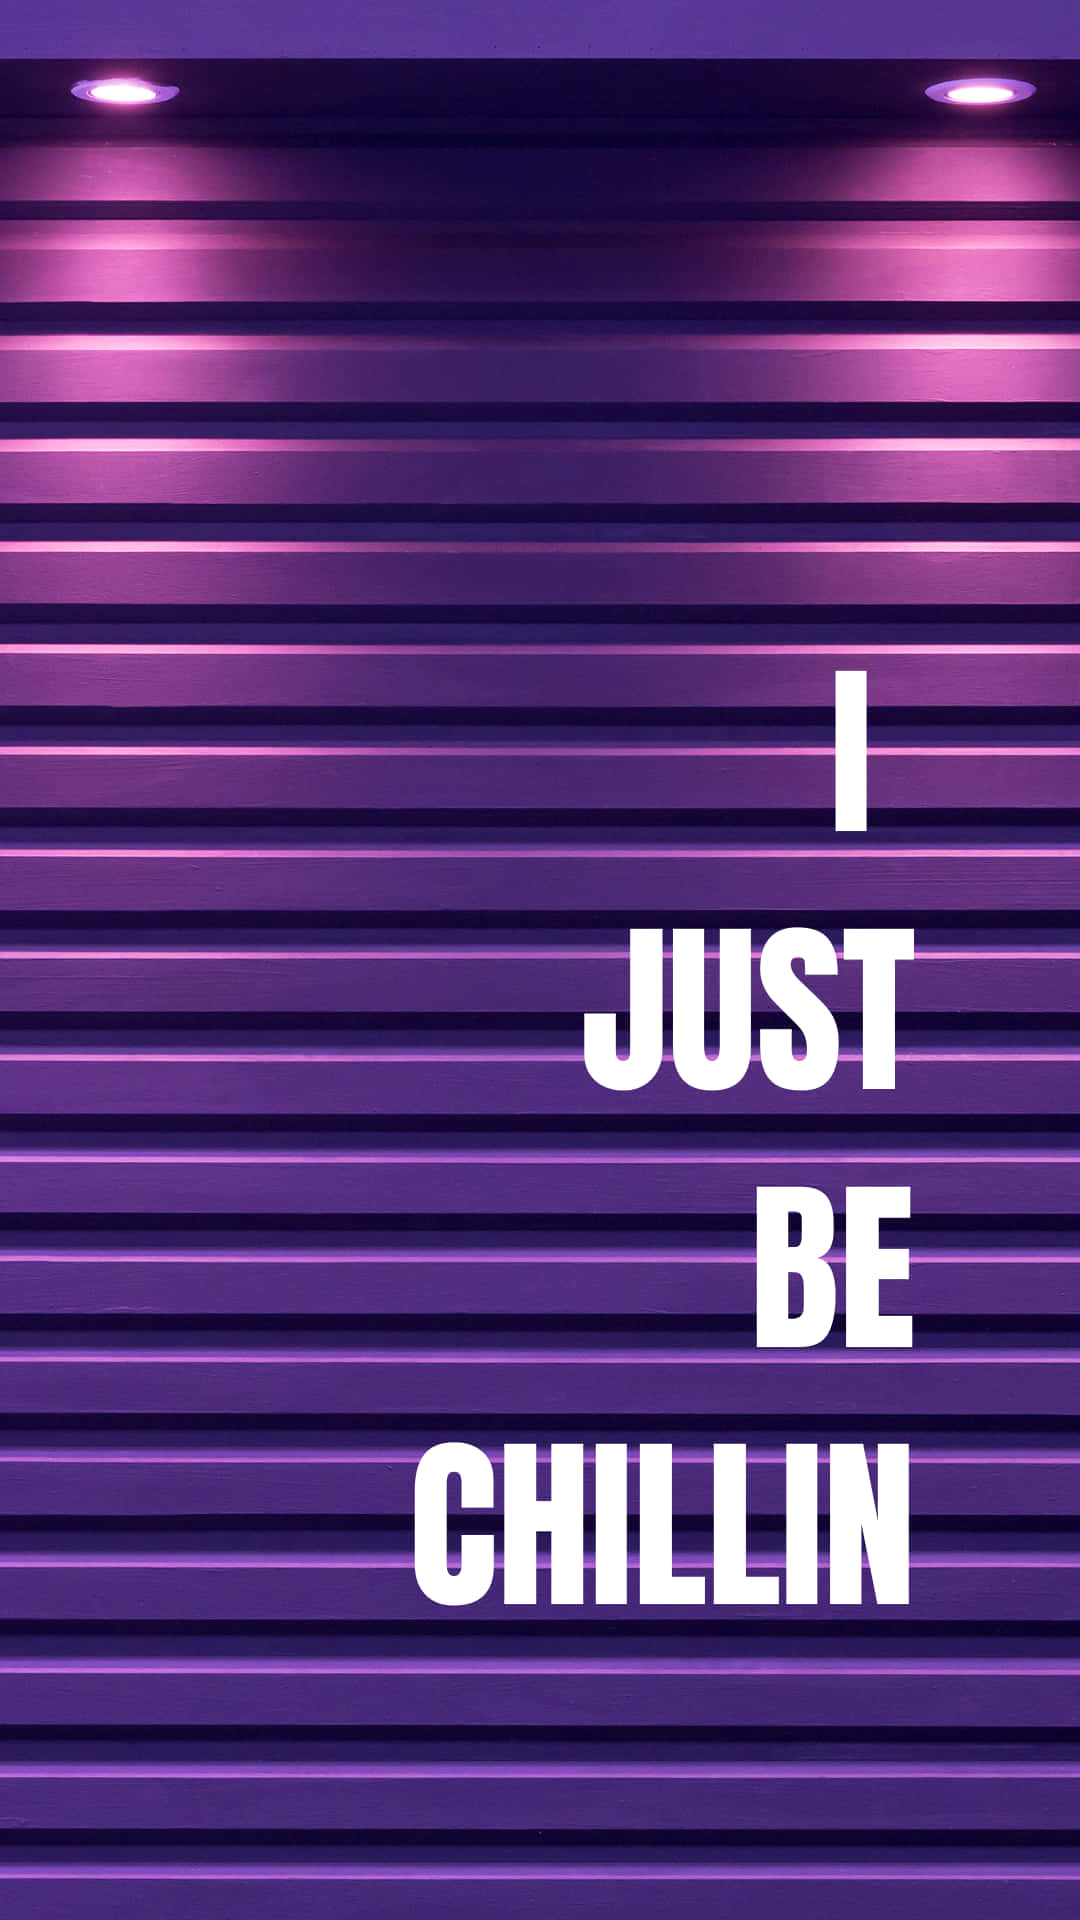 I Just Be Chillin' - Purple Wall Art Wallpaper